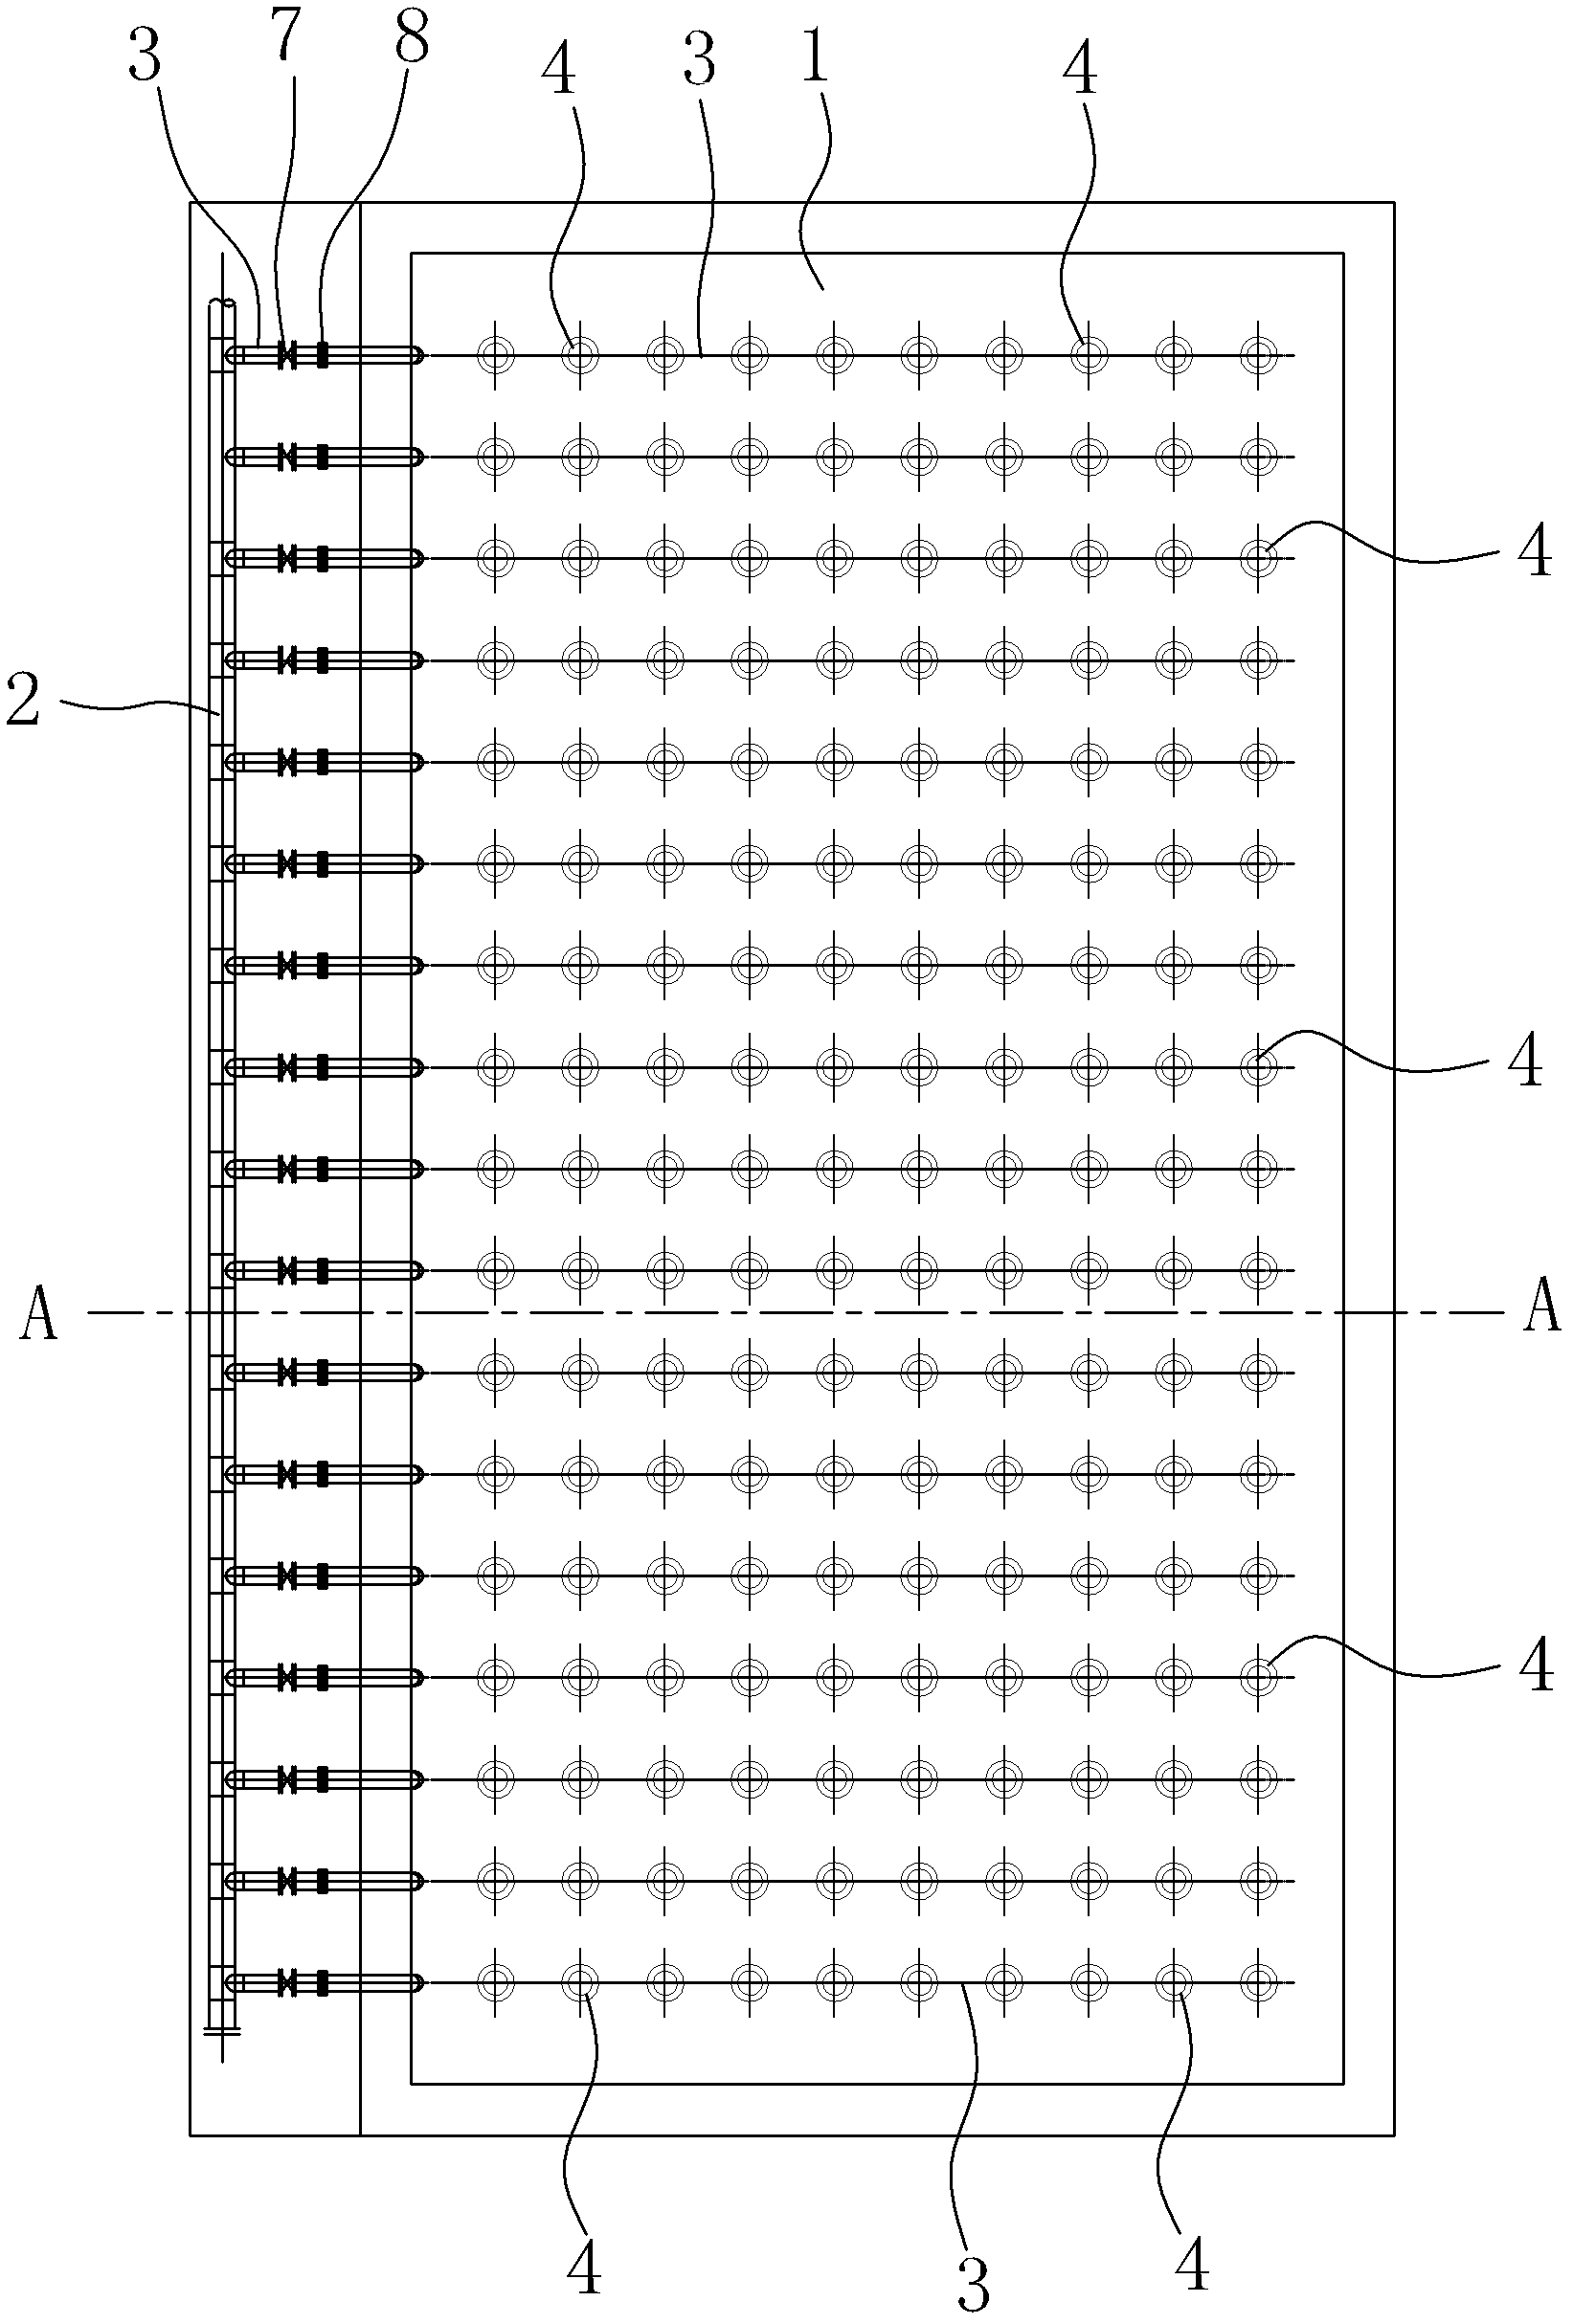 Orange segment type micro-porous aeration system